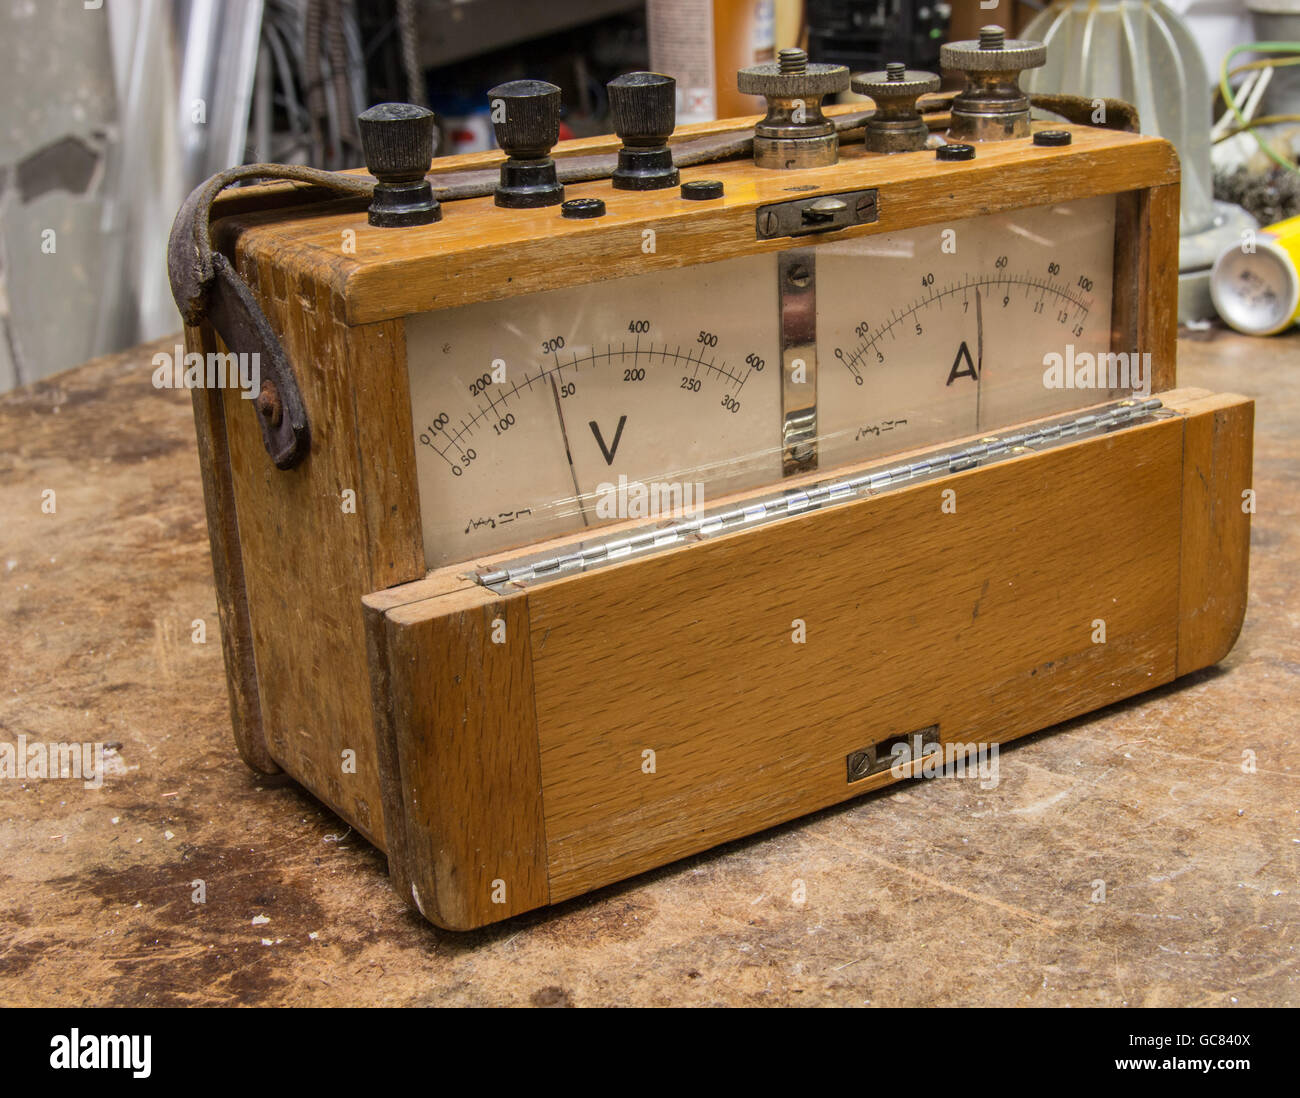 Compteur électrique en bois analogiques vintage sur l'ancienne table test Banque D'Images